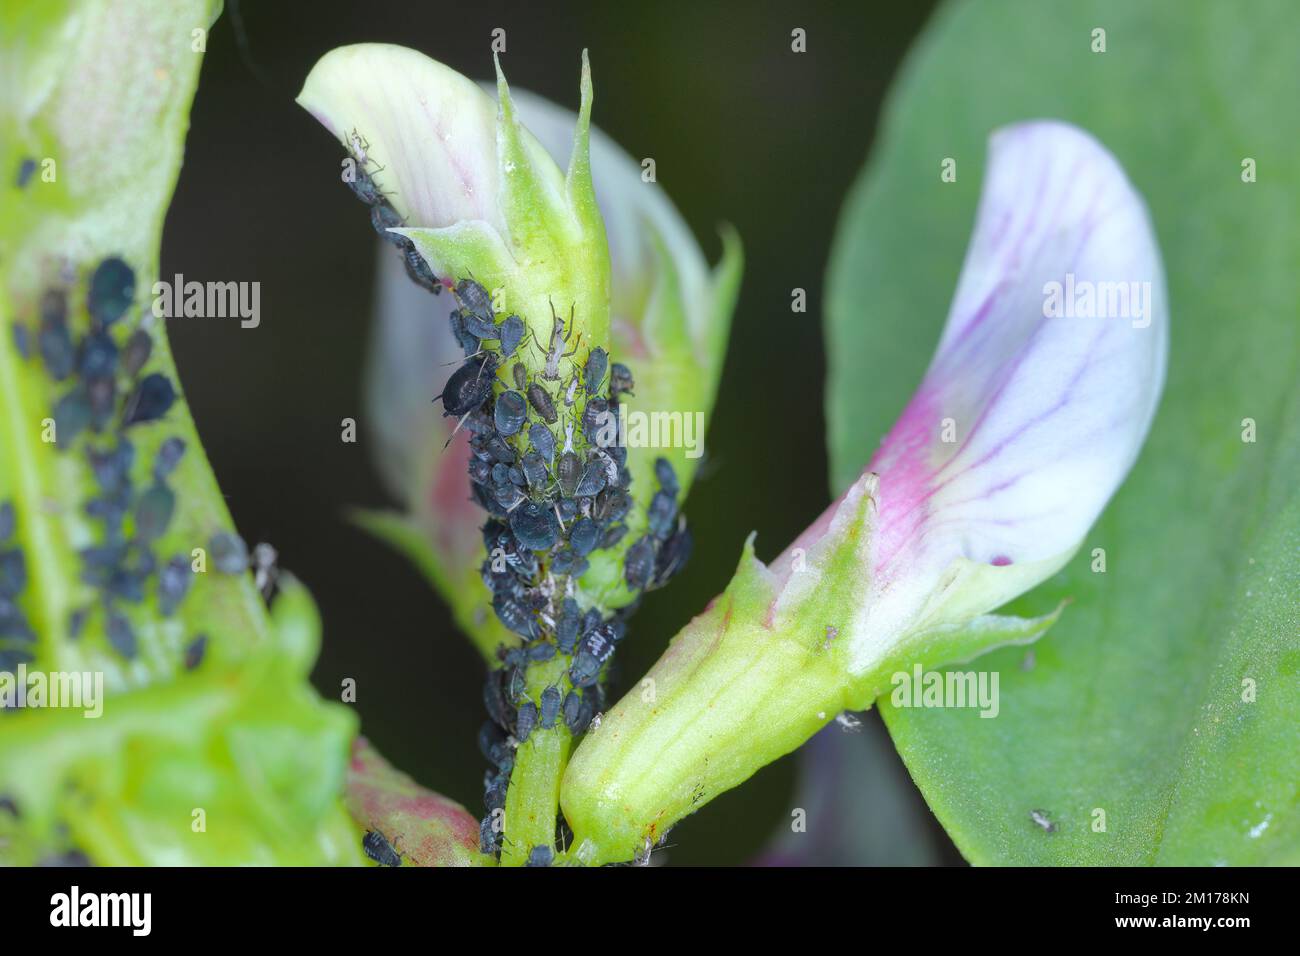 La colonie de pucerons du haricot noir, Aphis fabae, sur des plants de fève. Banque D'Images